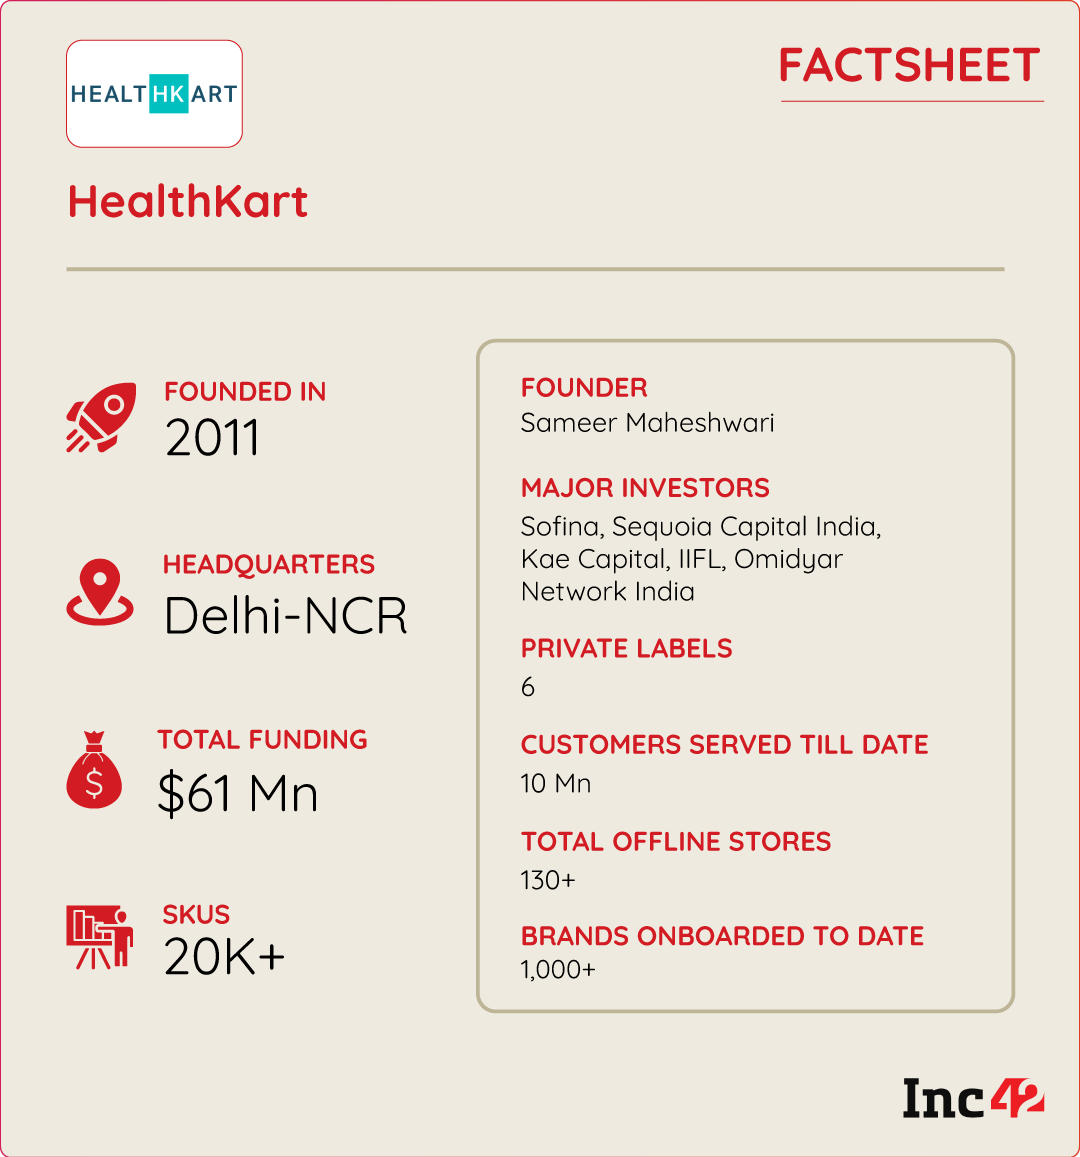 Healthkart Factsheet